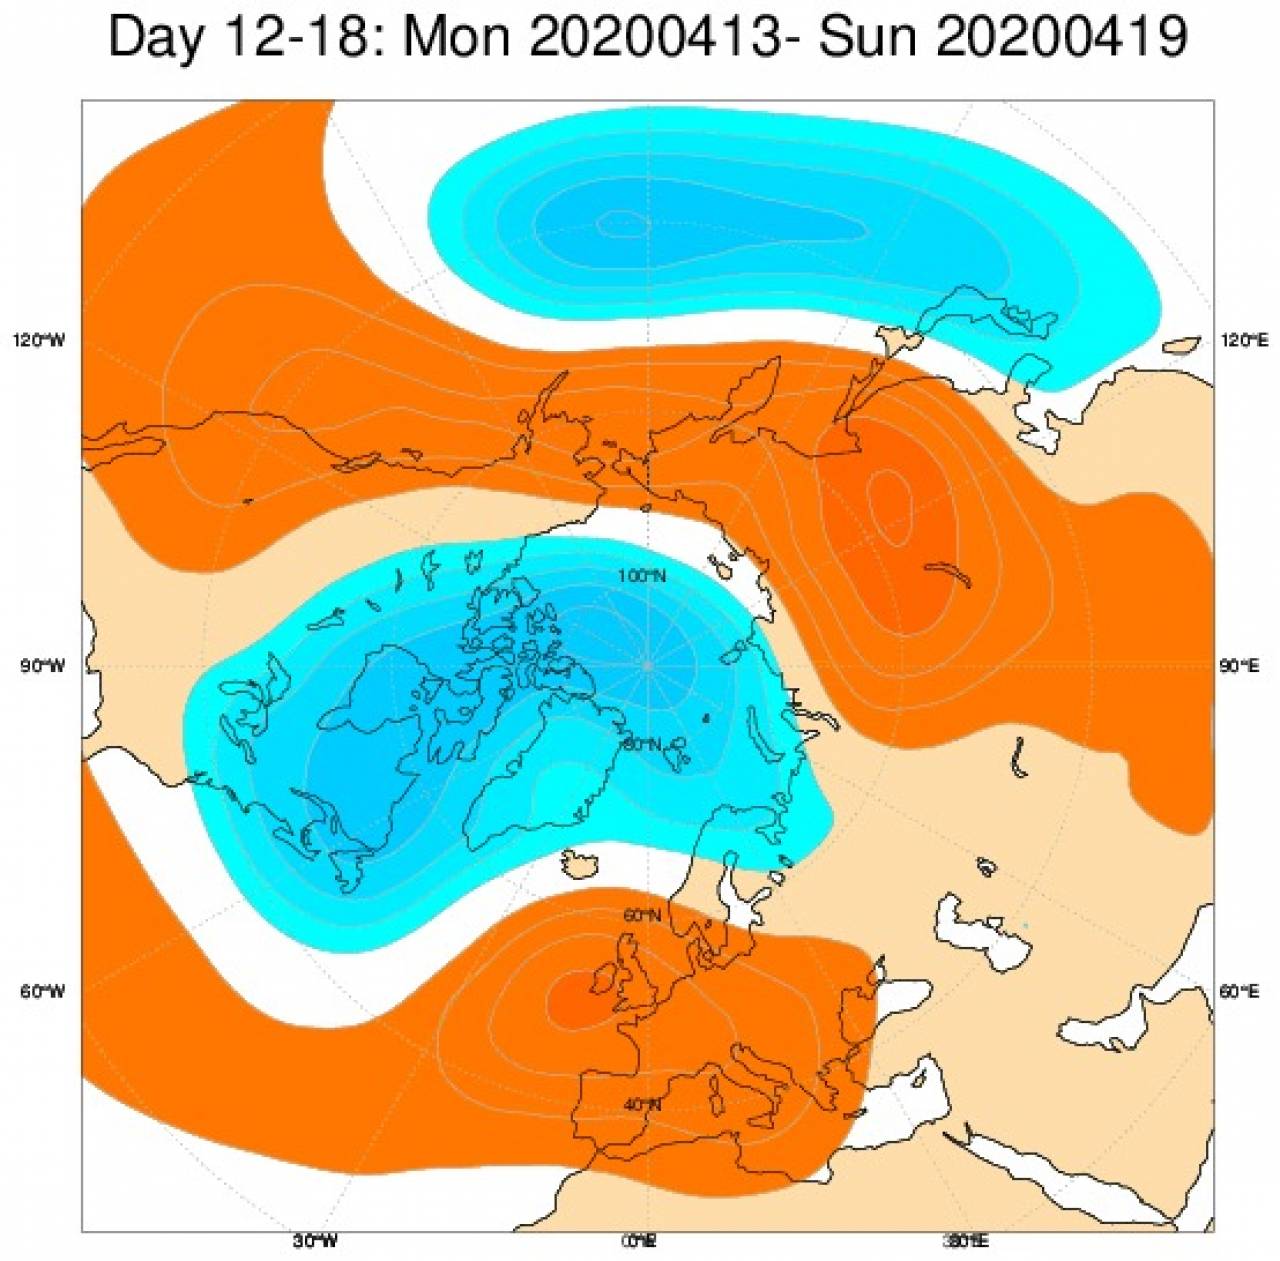 Tendenza meteo: le anomalie di geopotenziale previste nel periodo 13-20 aprile secondo il modello ECMWF